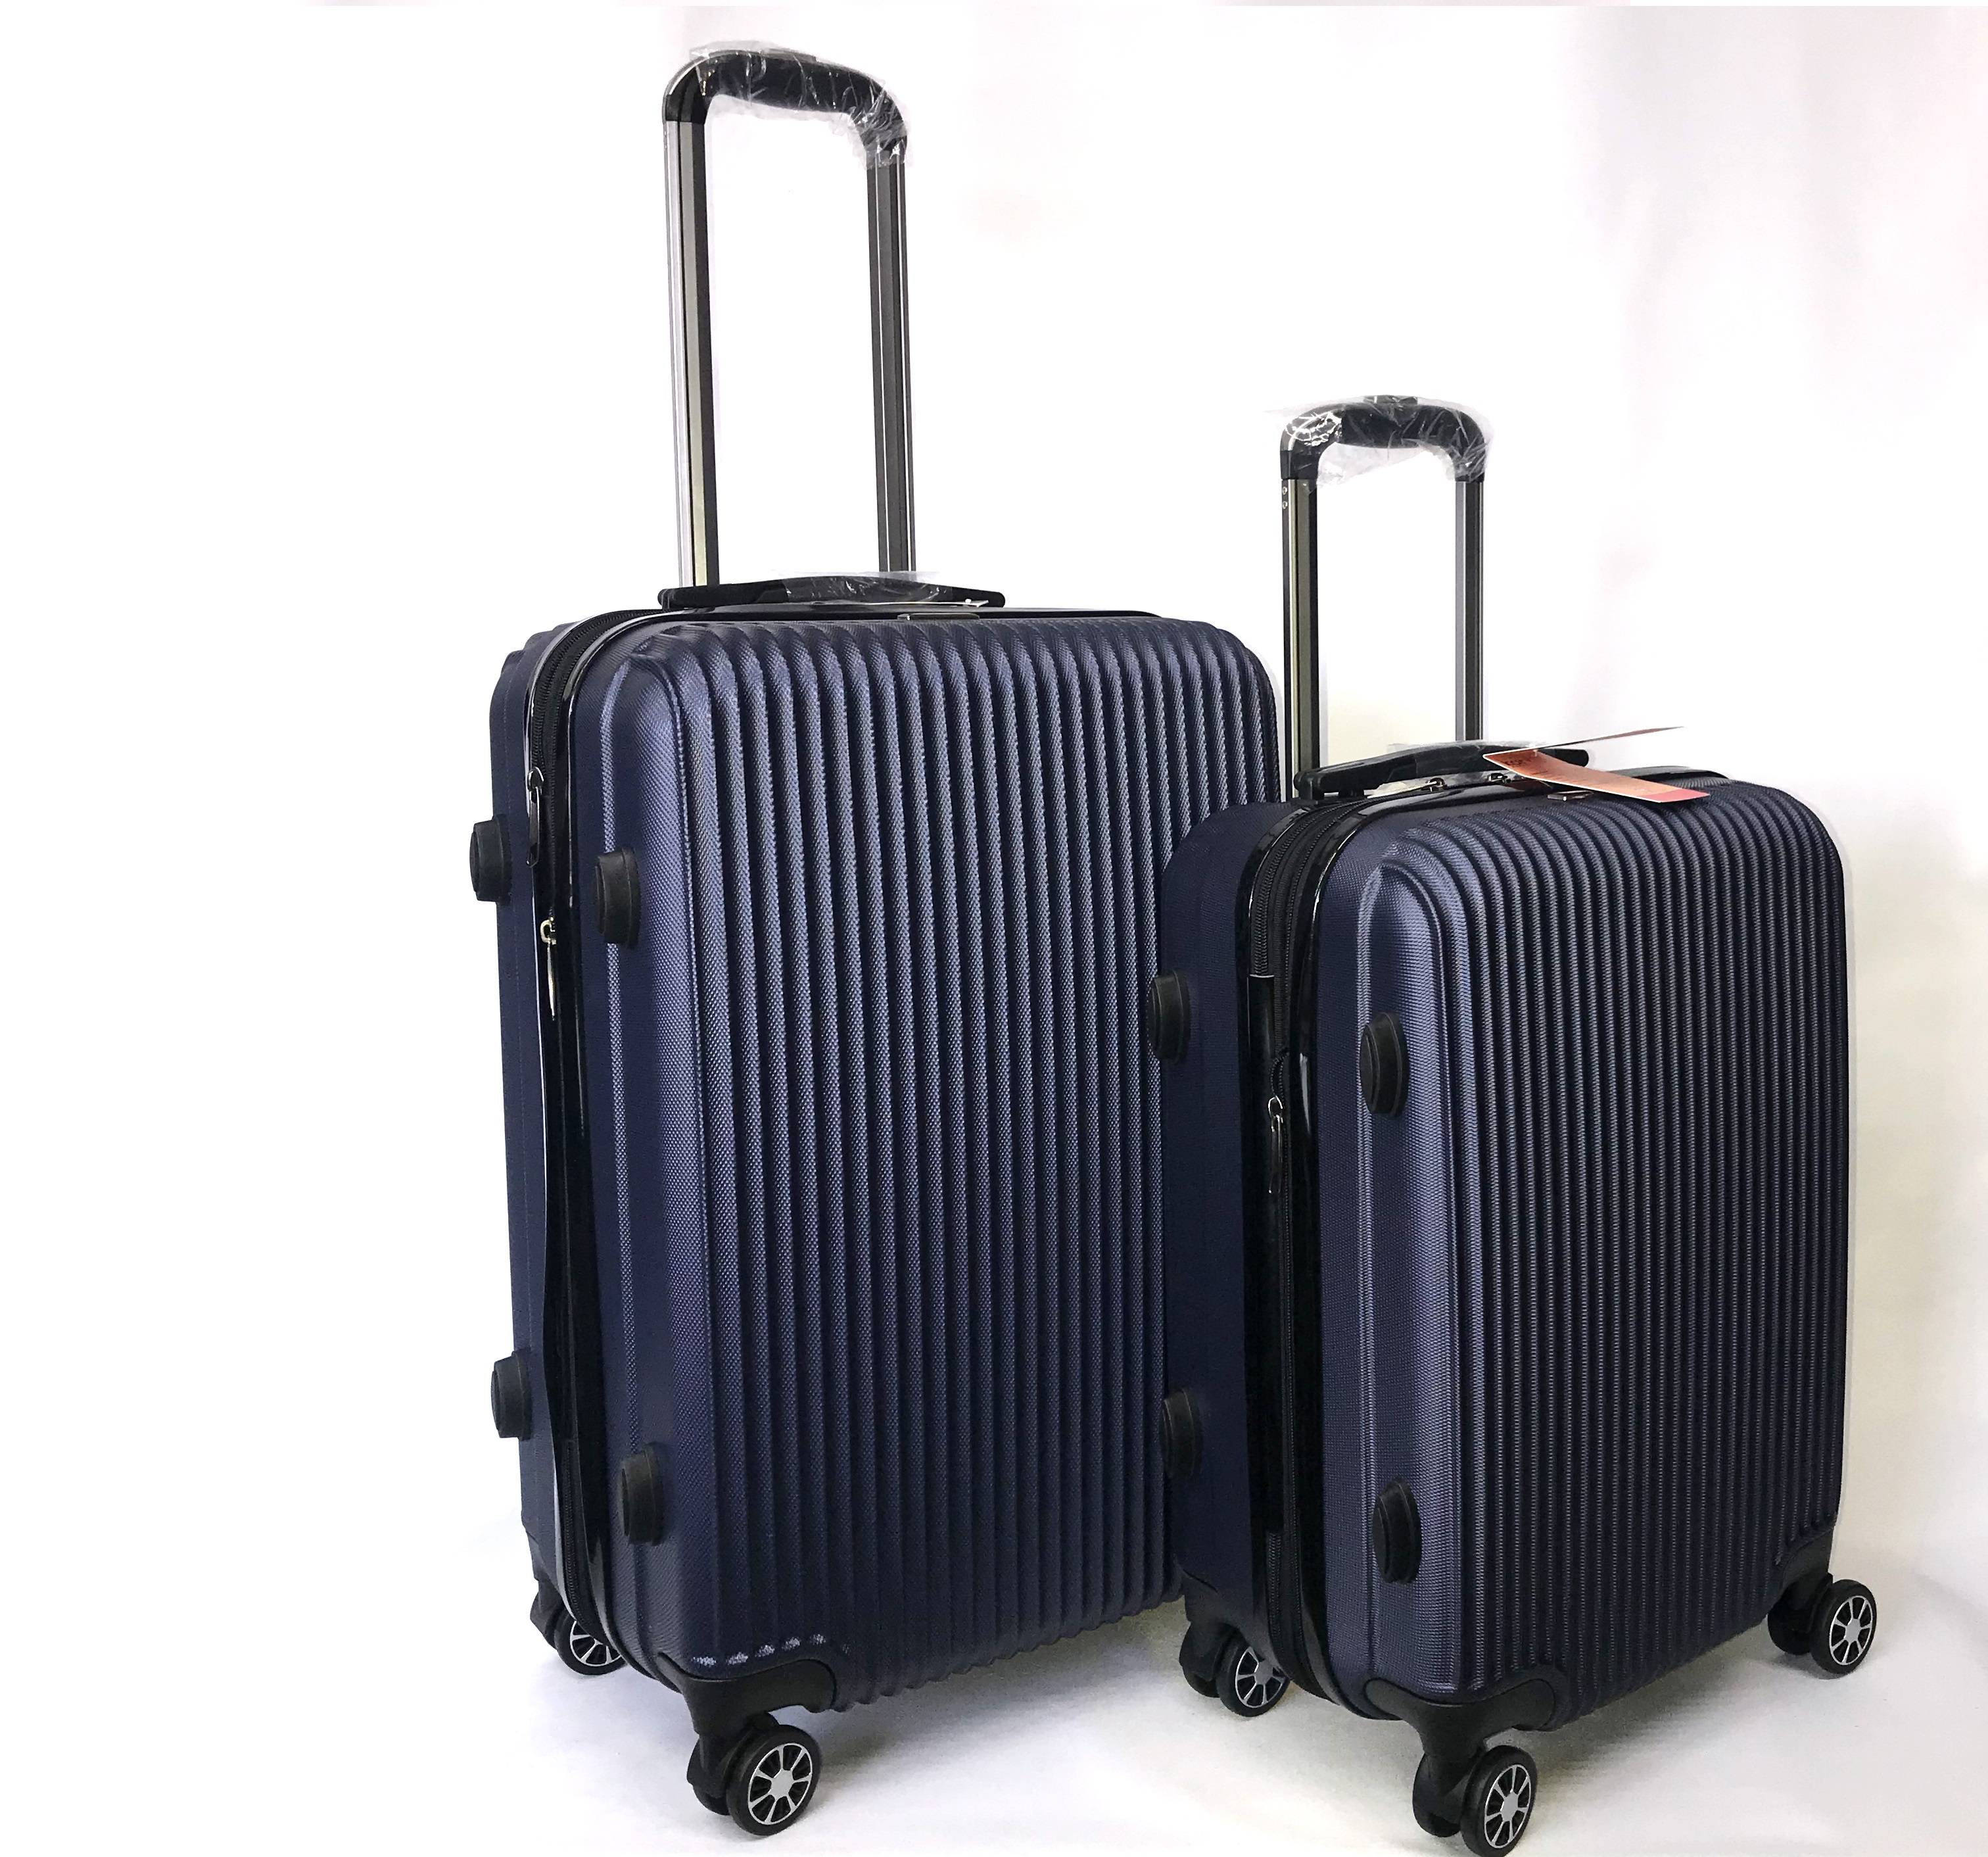 Какой чемодан лучше: пластиковый или тканевый — плюсы, минусы, отзывы